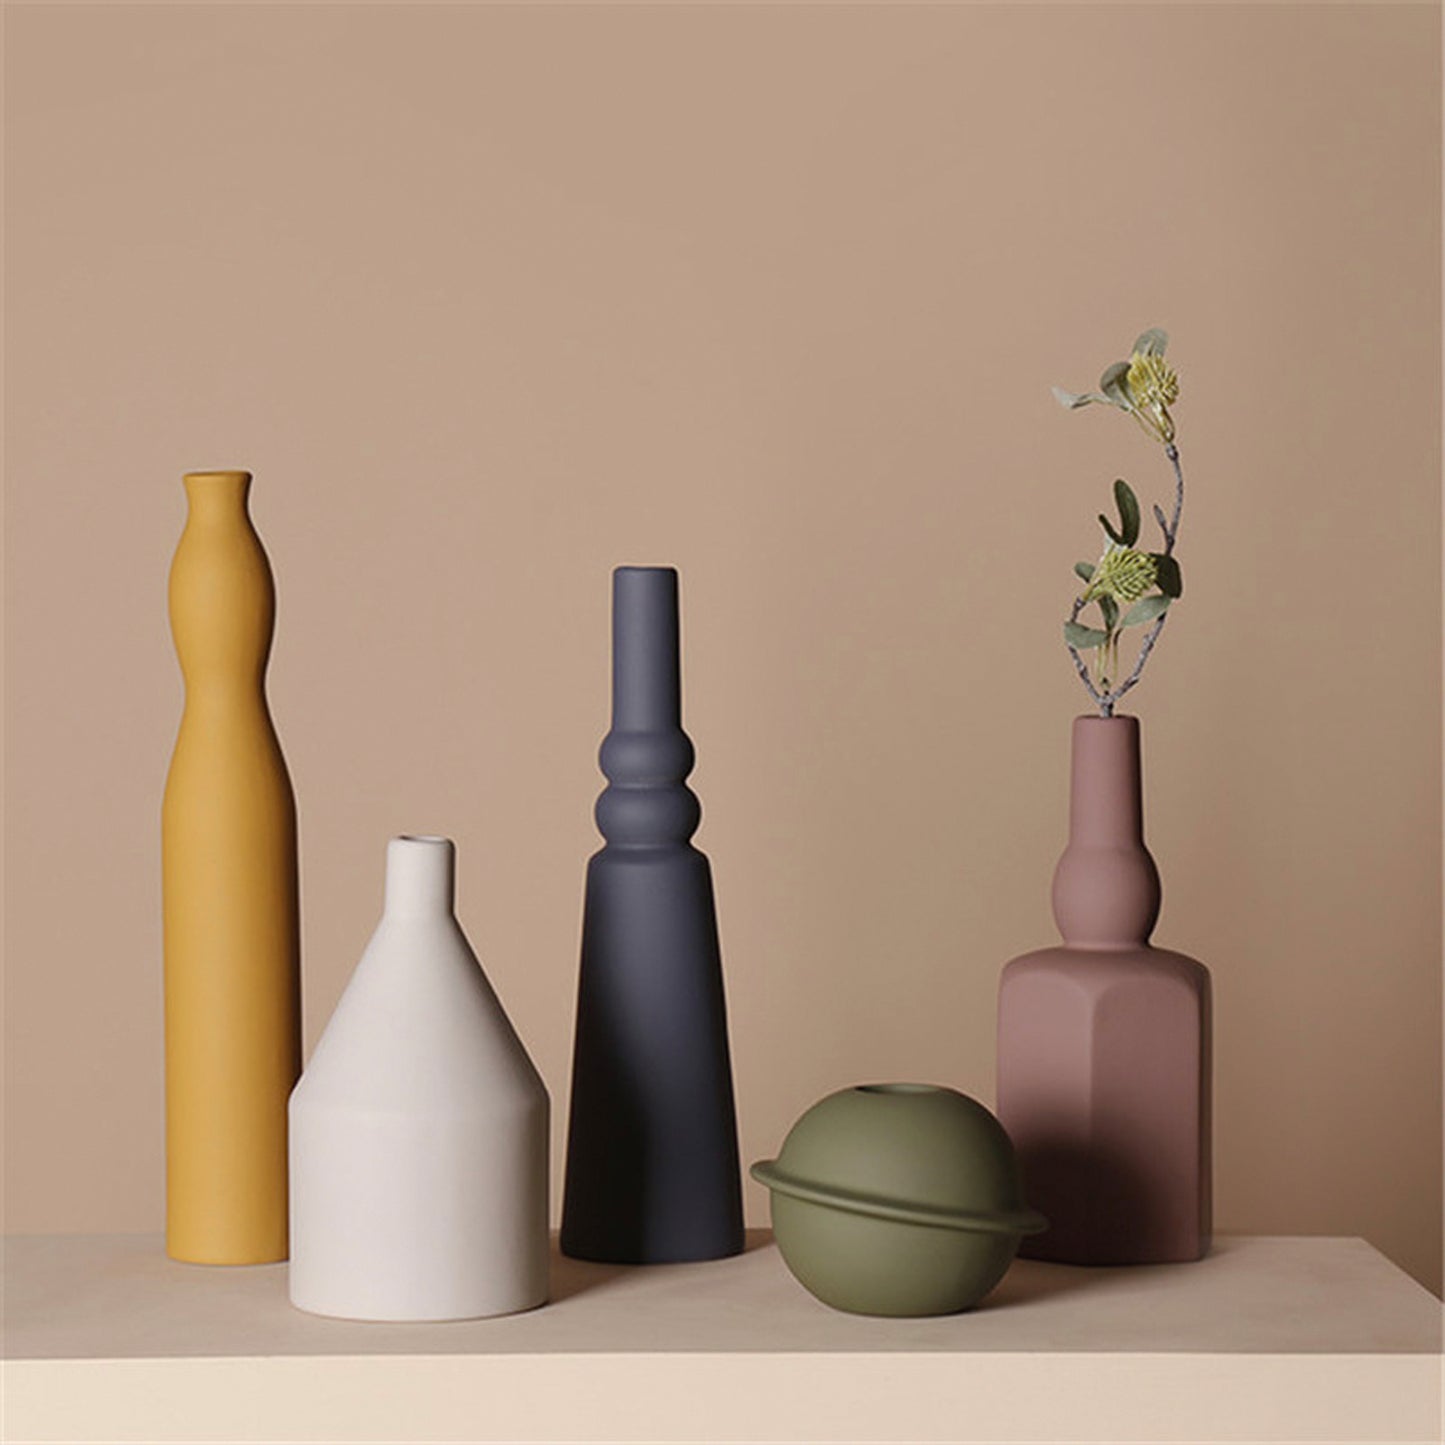 Geometric Ceramic Floral Vase